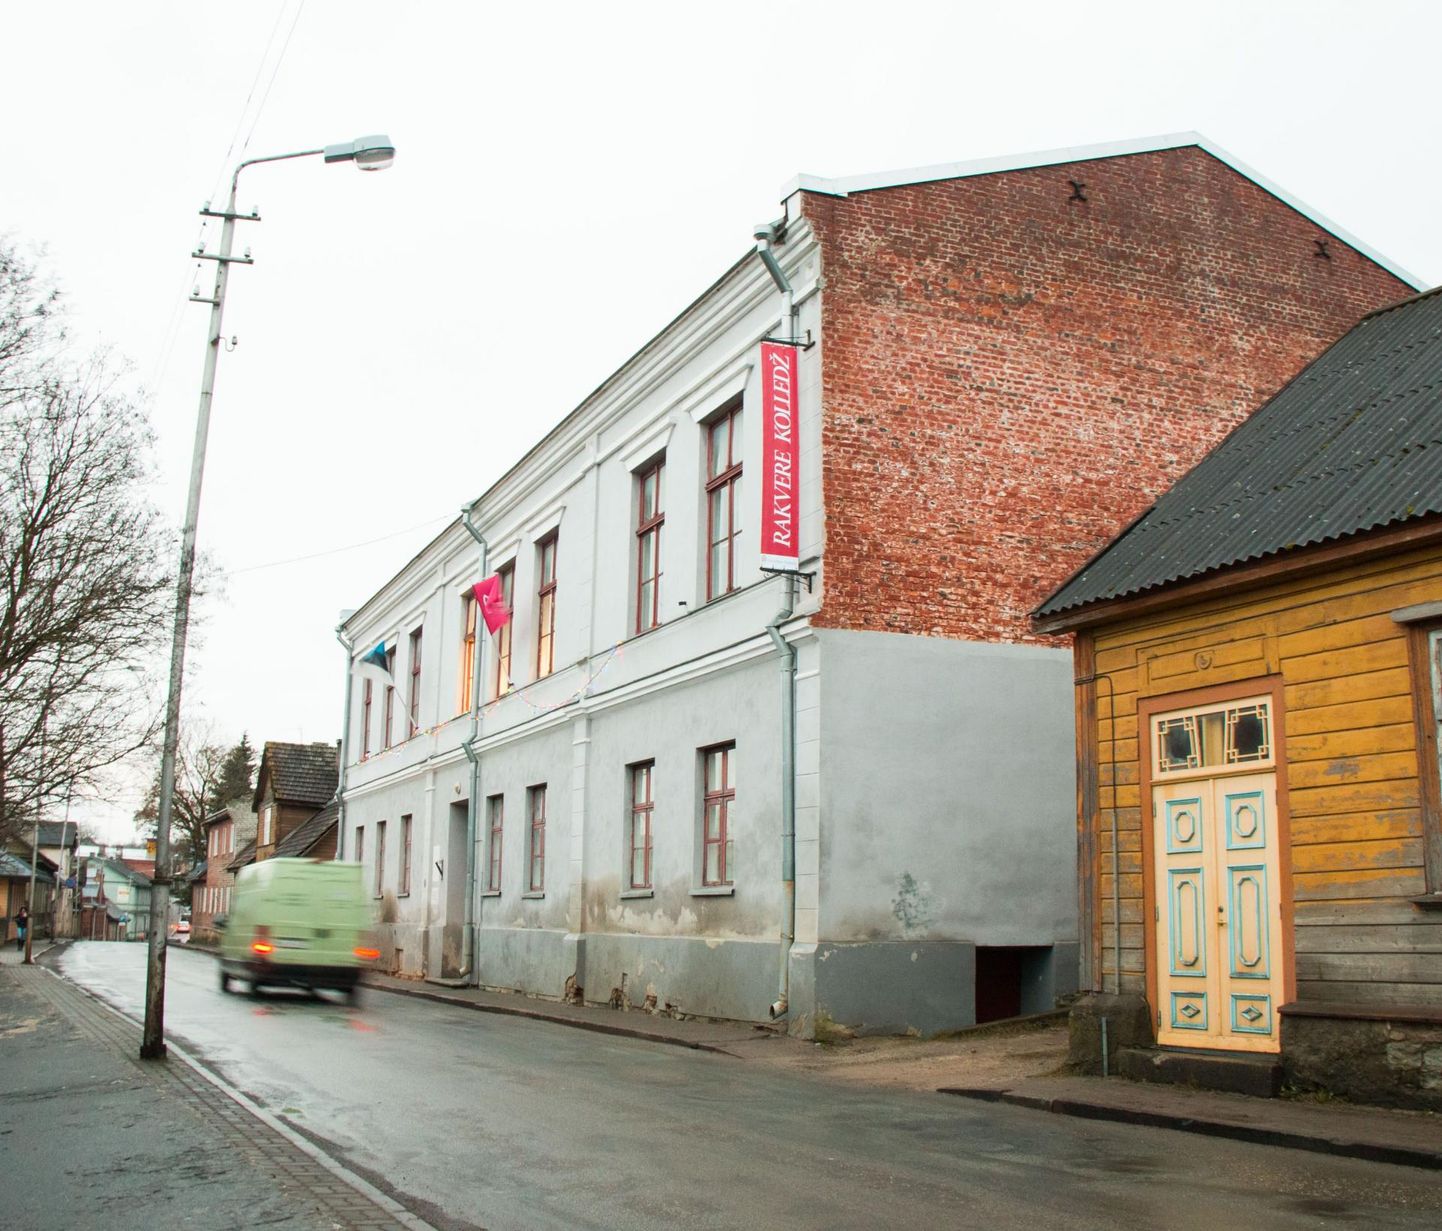 Tallinna ülikooli Rakvere kolledži ajaloolise hõnguga majas tehakse ponnistusi tõenäoliselt viimasteks lõpueksamiteks.